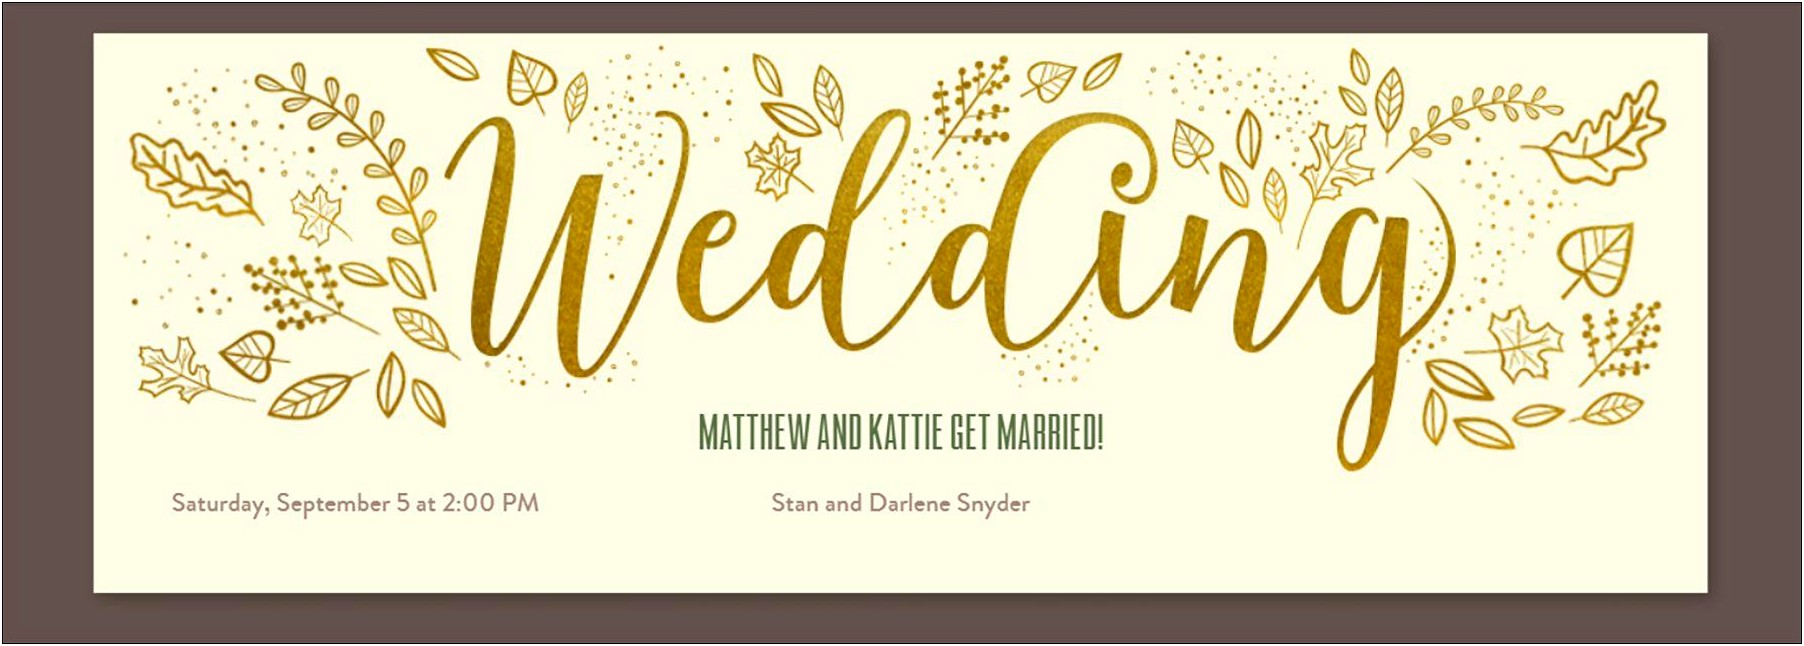 Best Way To Send Wedding Invitation Online